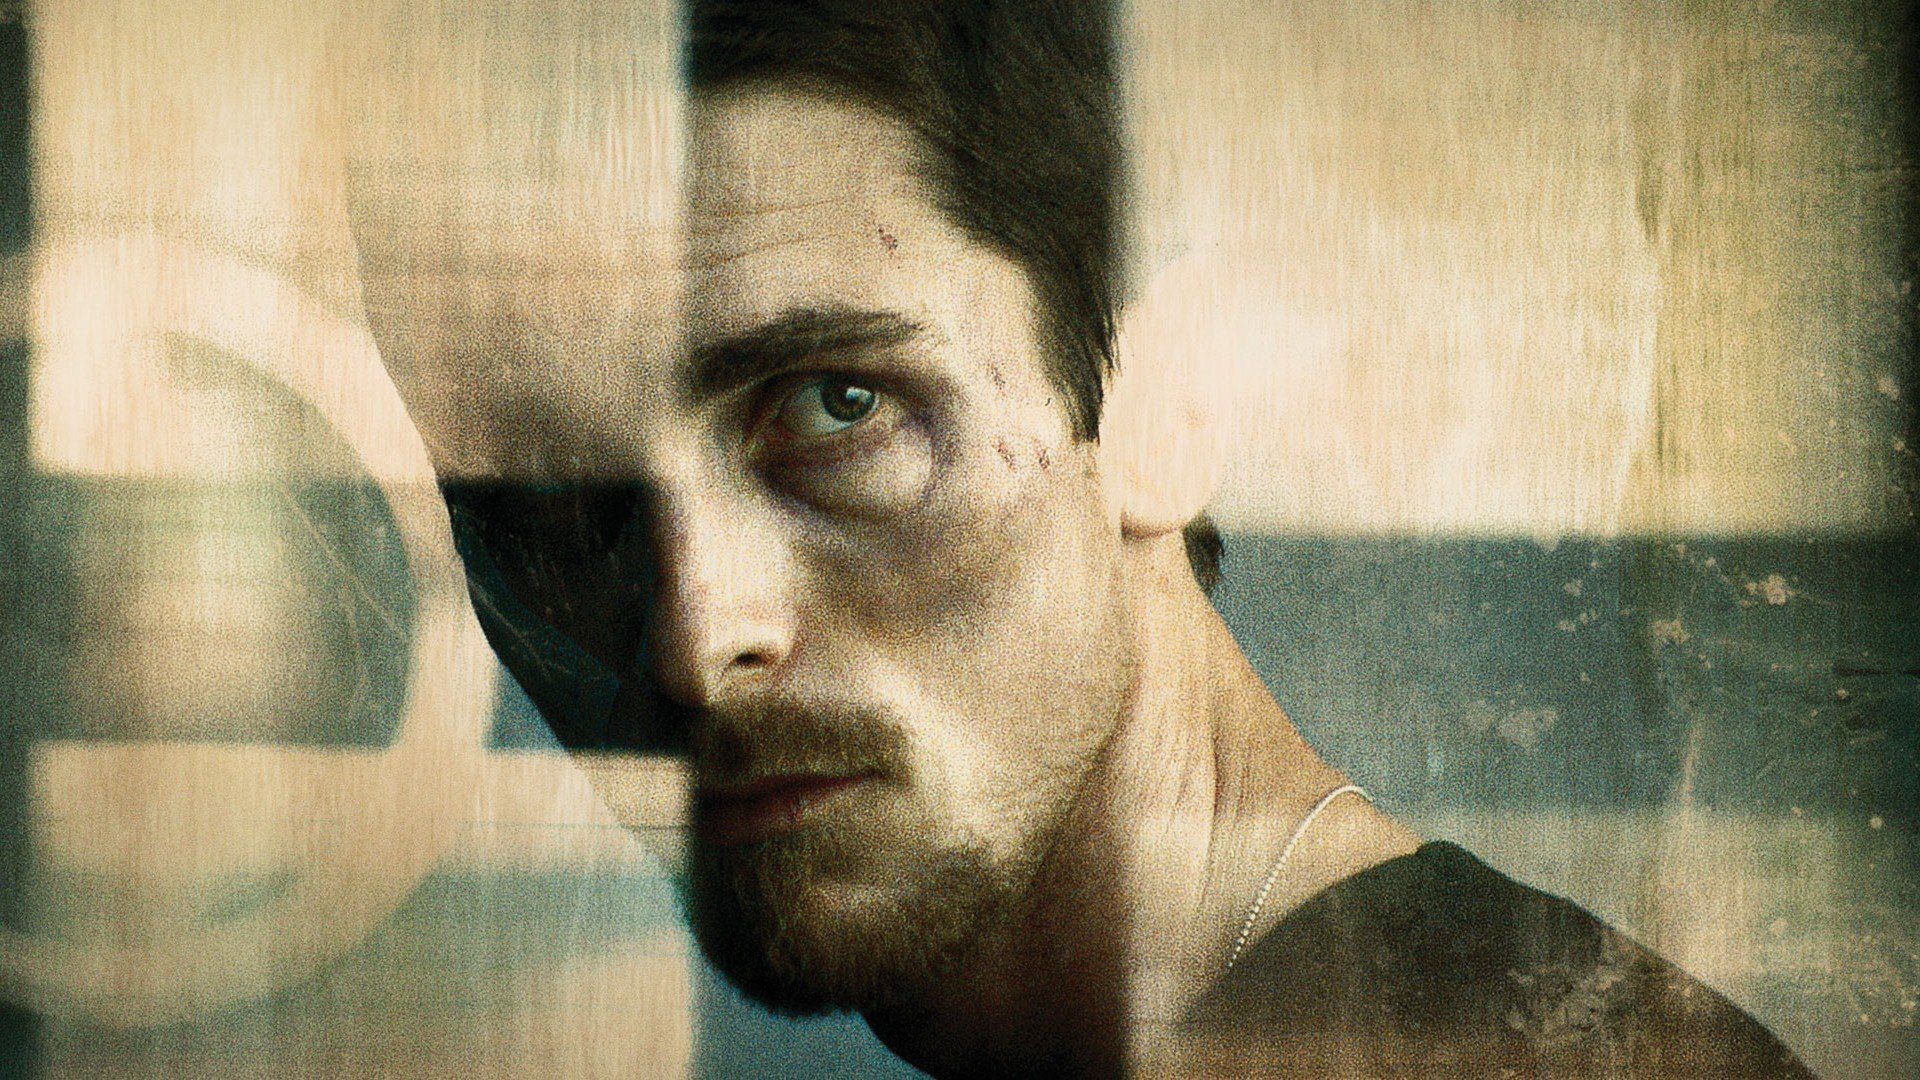 Christian Bale: The Machinist, Trevor Reznik, 2004. 1920x1080 Full HD Wallpaper.